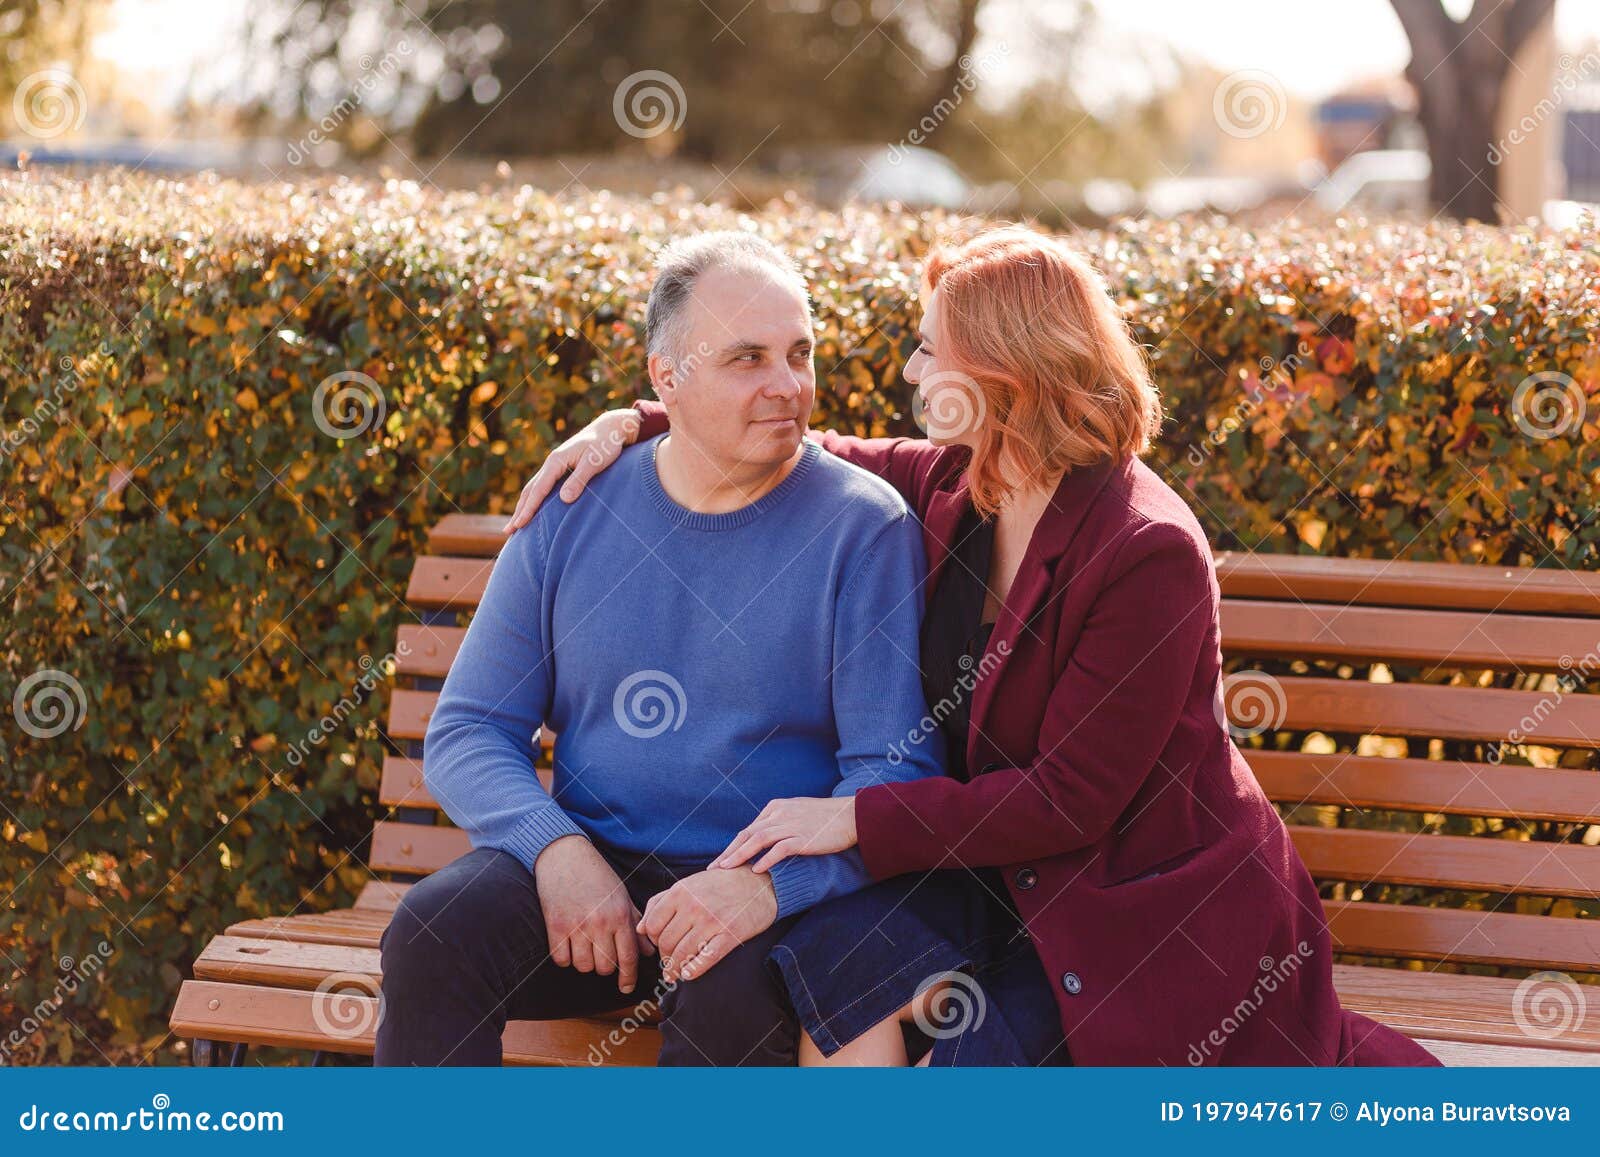 Un De 50 Años Con Un Suéter Azul Y Una Mujer Con Un Abrigo Burdeos Sentados En Un Banco De Un Parque En Otoño Imagen de archivo - Imagen de familia,